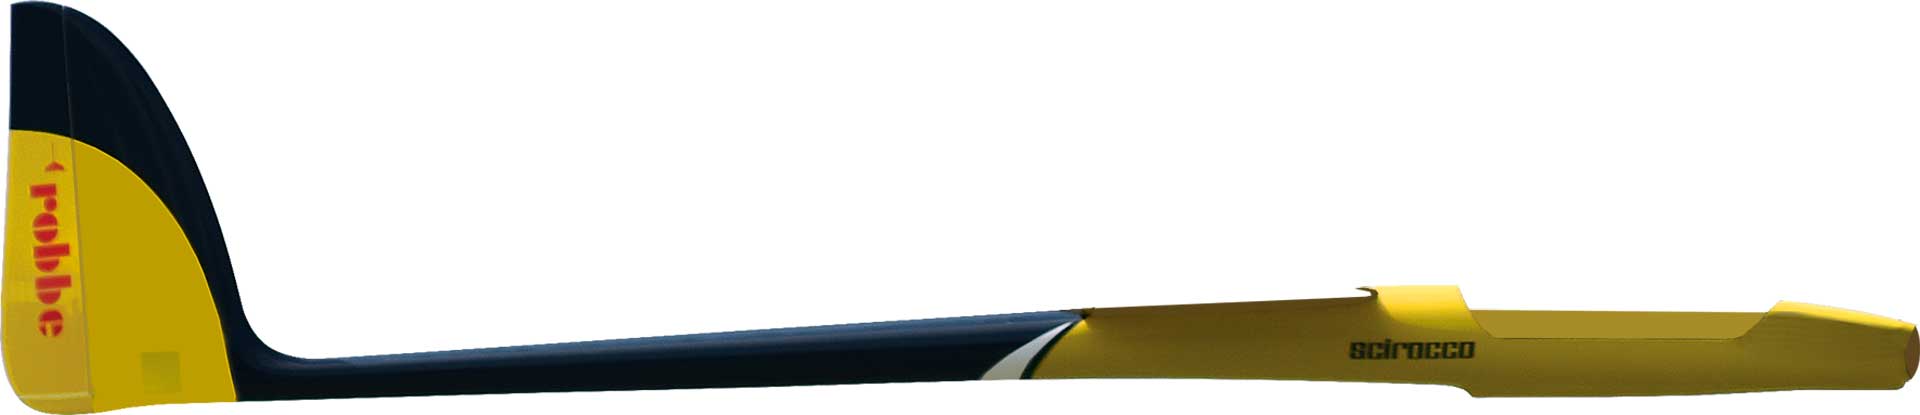 Robbe Modellsport Rumpf SCIROCCO L 4,0M PNP inkl. Servos für Höhe und Seite